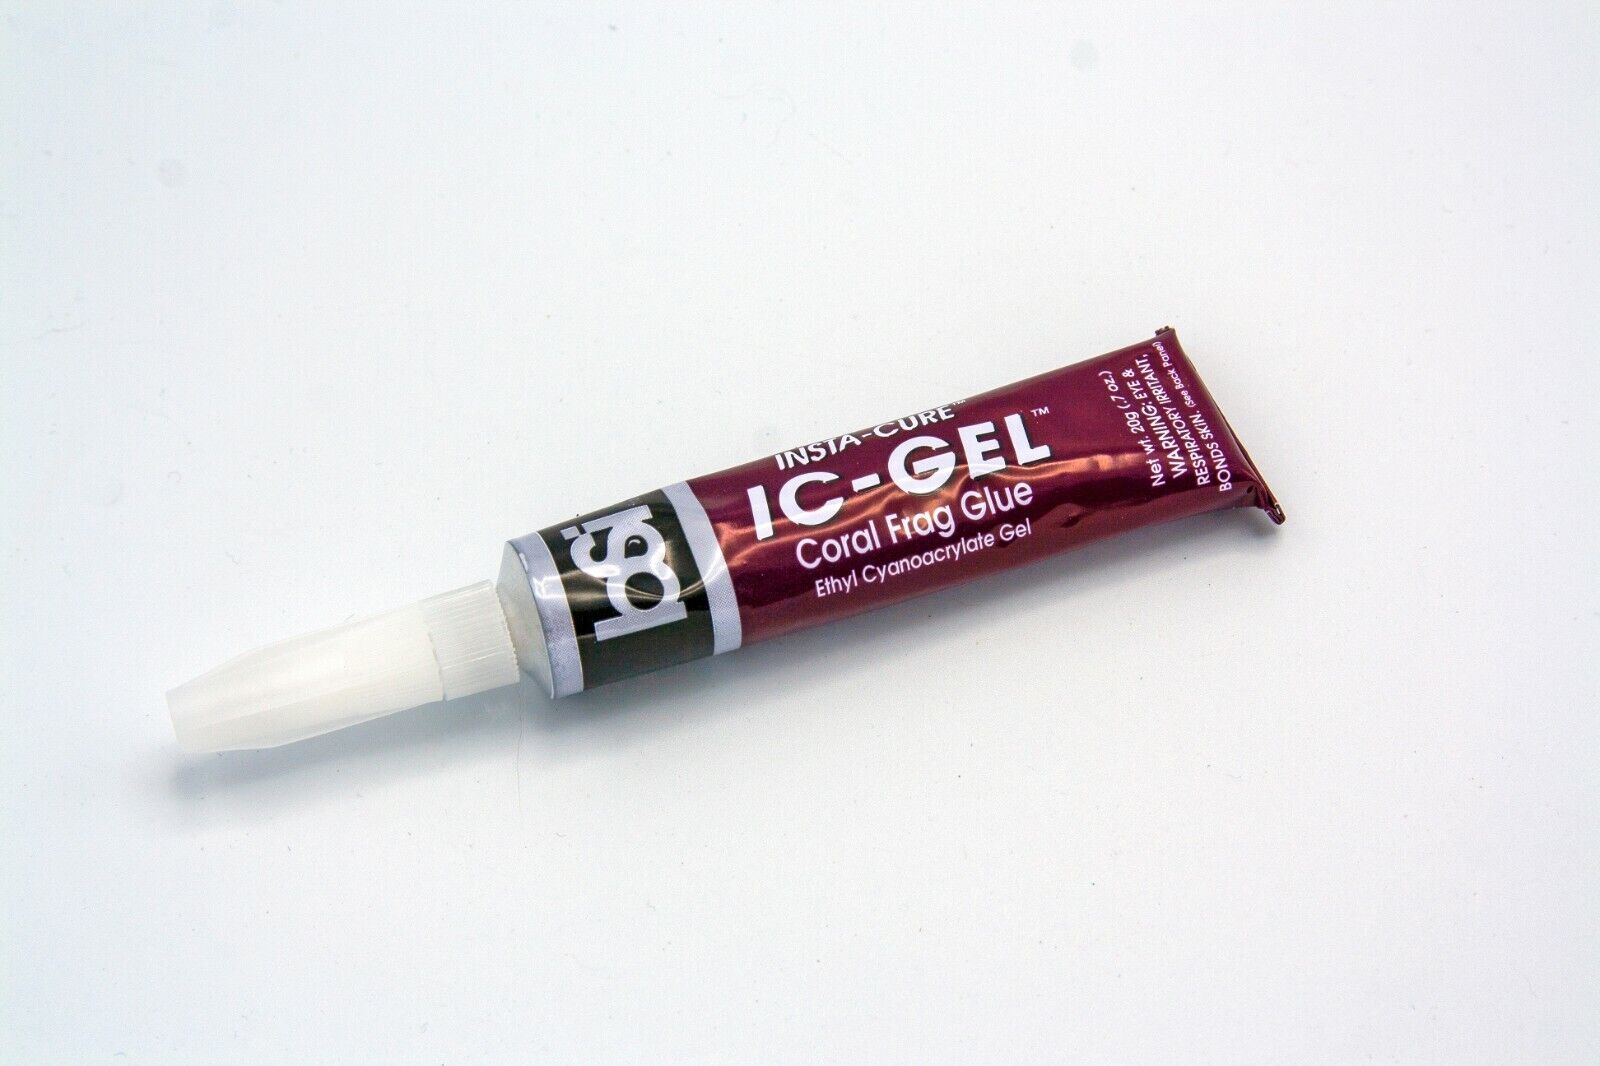  BSI IC-GEL 20gm Tube - Coral Frag Glue Super Glue - 